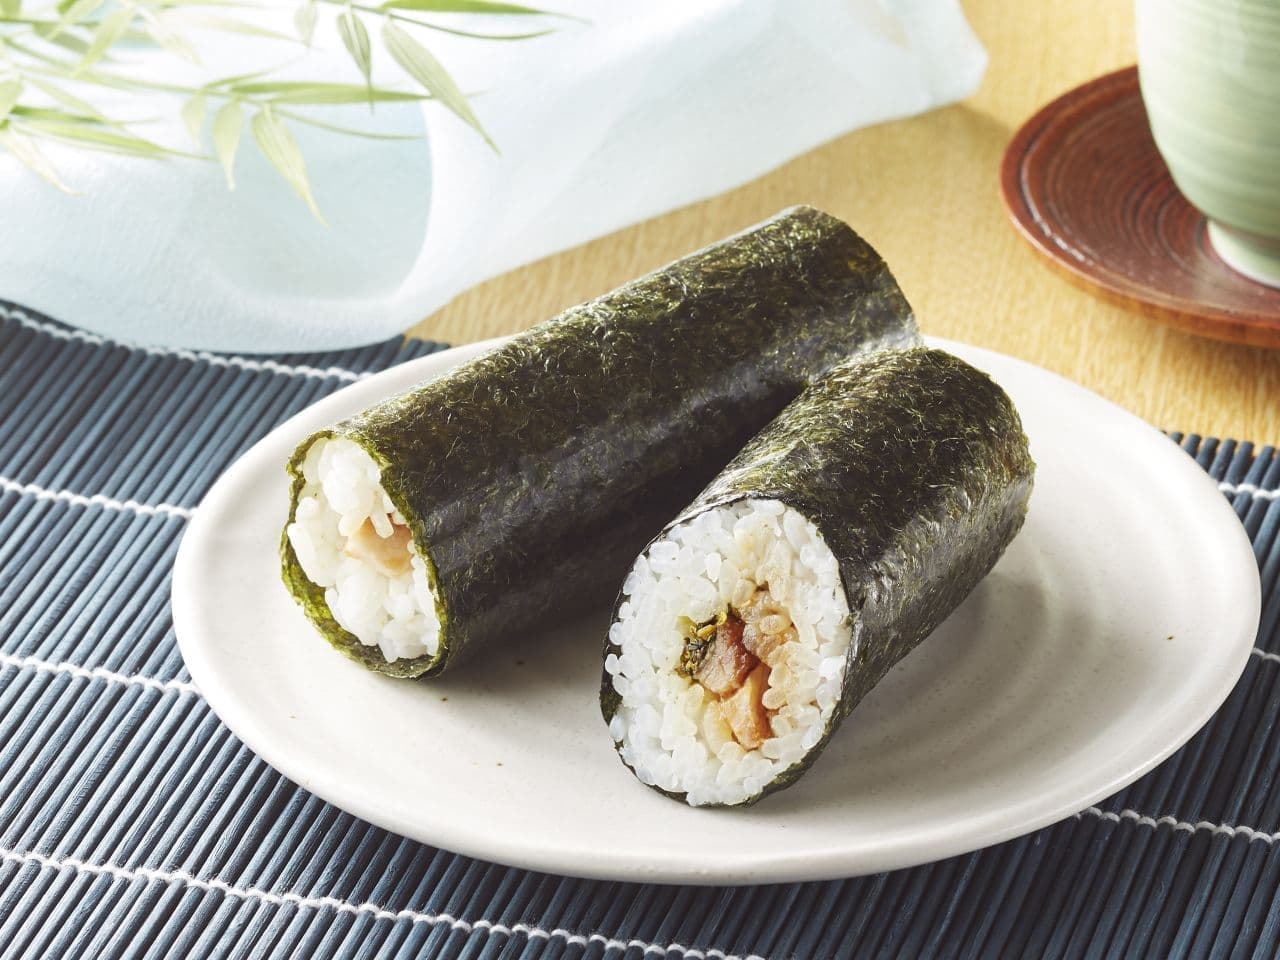 Ministop "Temakizushi Aso Takana Char Sushi Roll